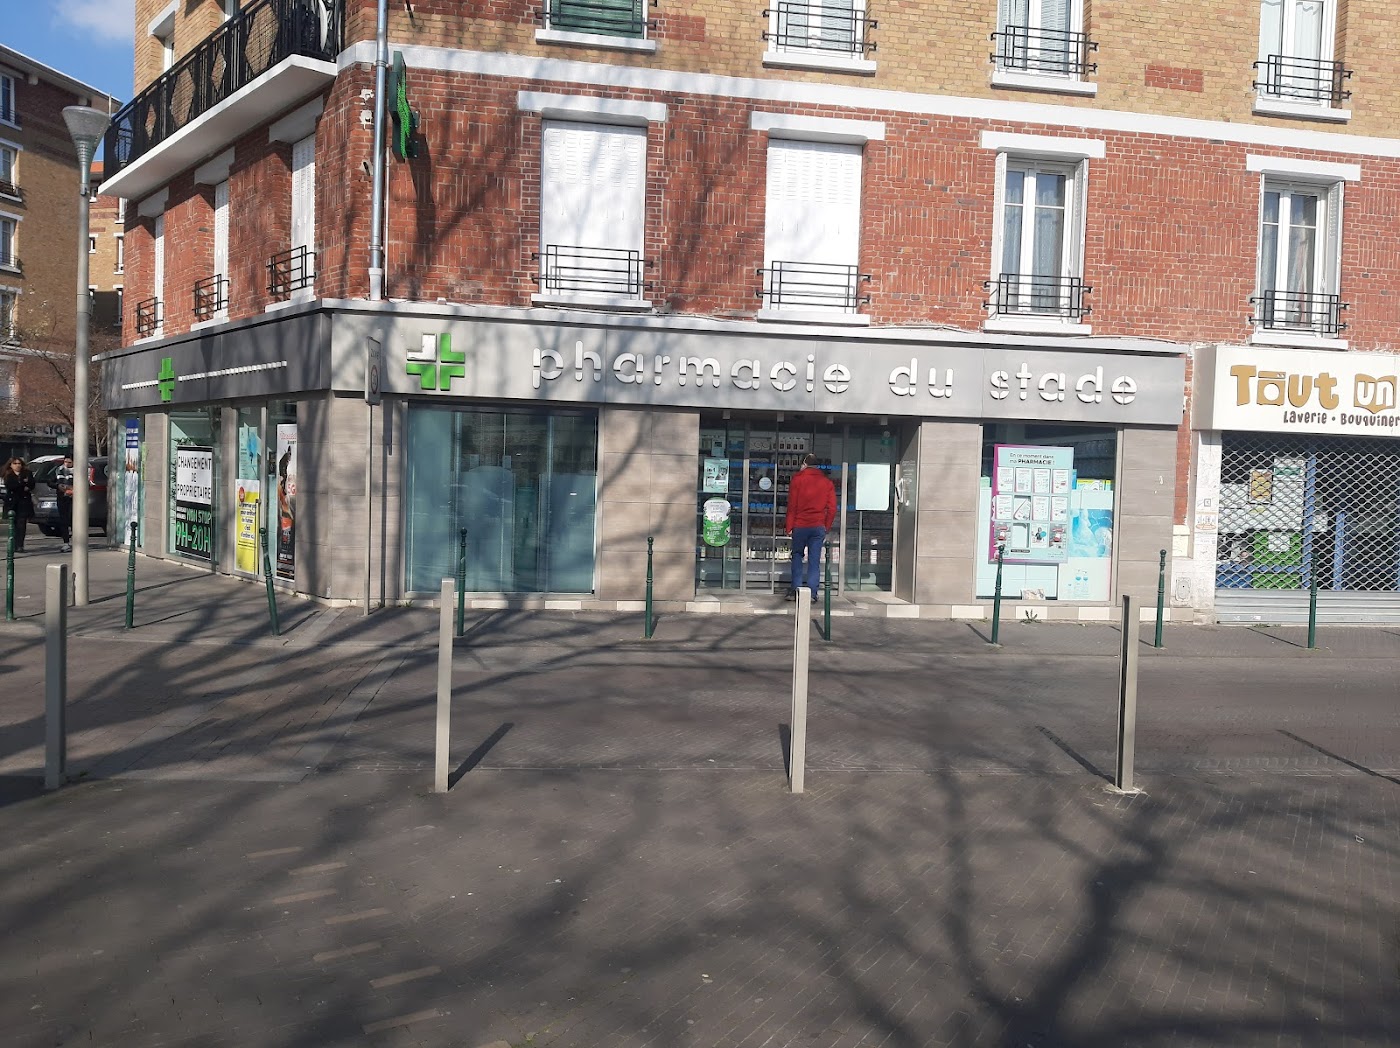 Pharmacie de la Gare du Stade